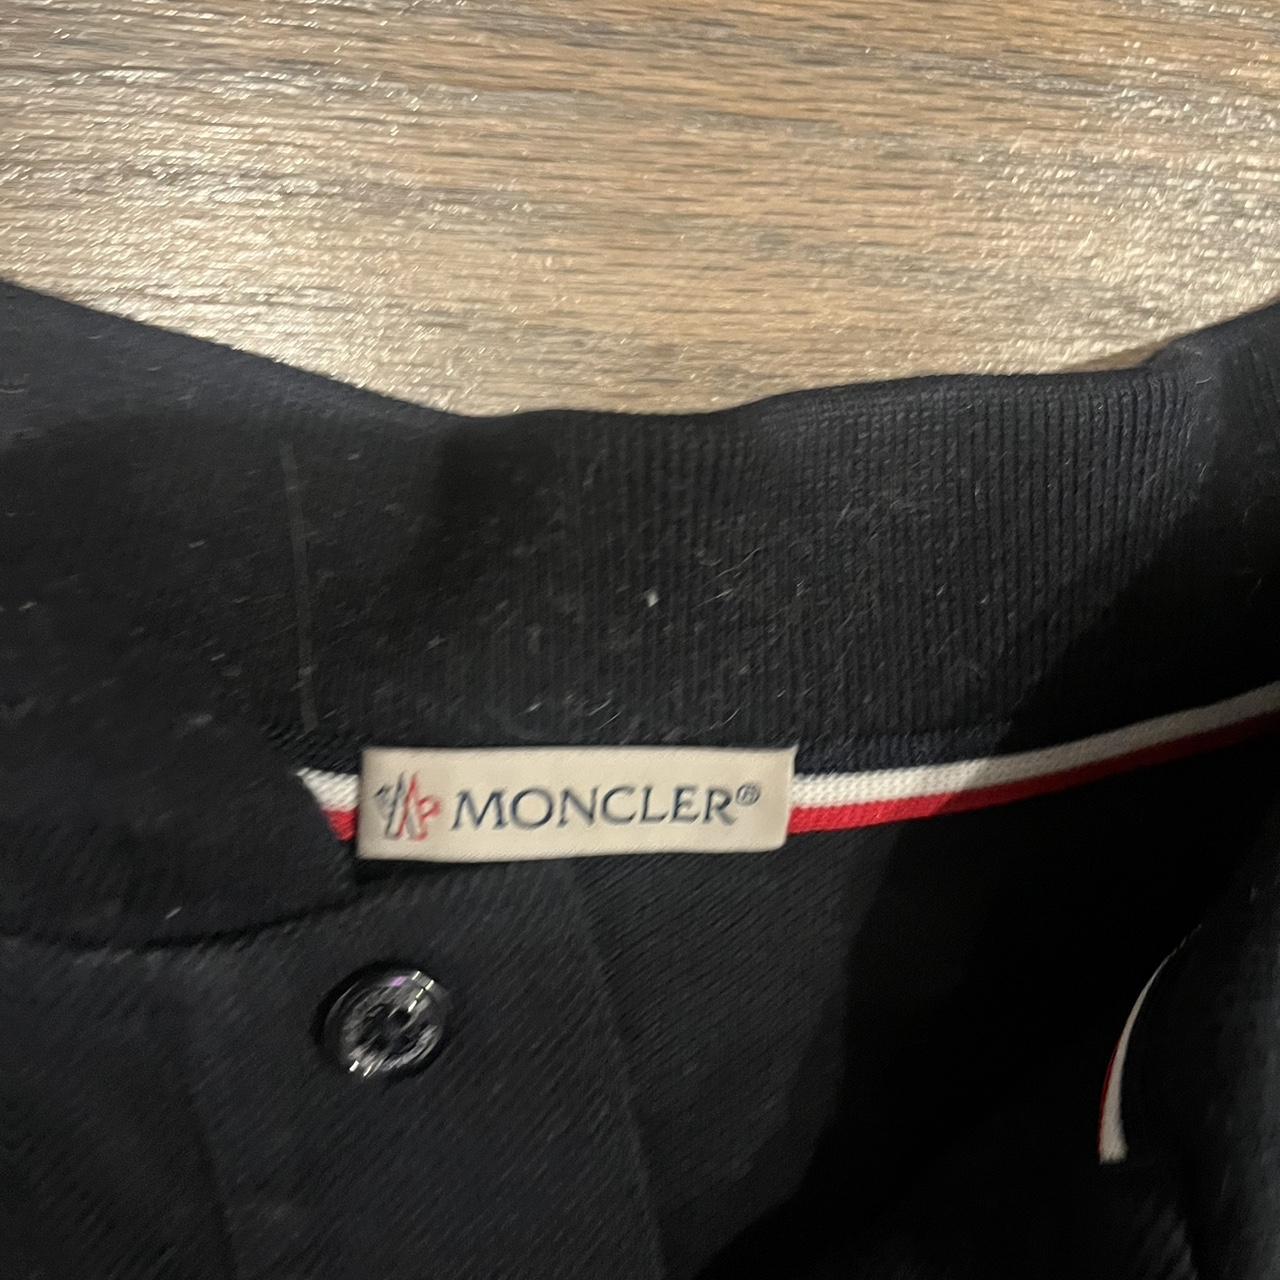 Moncler Men's Polo-shirts (2)